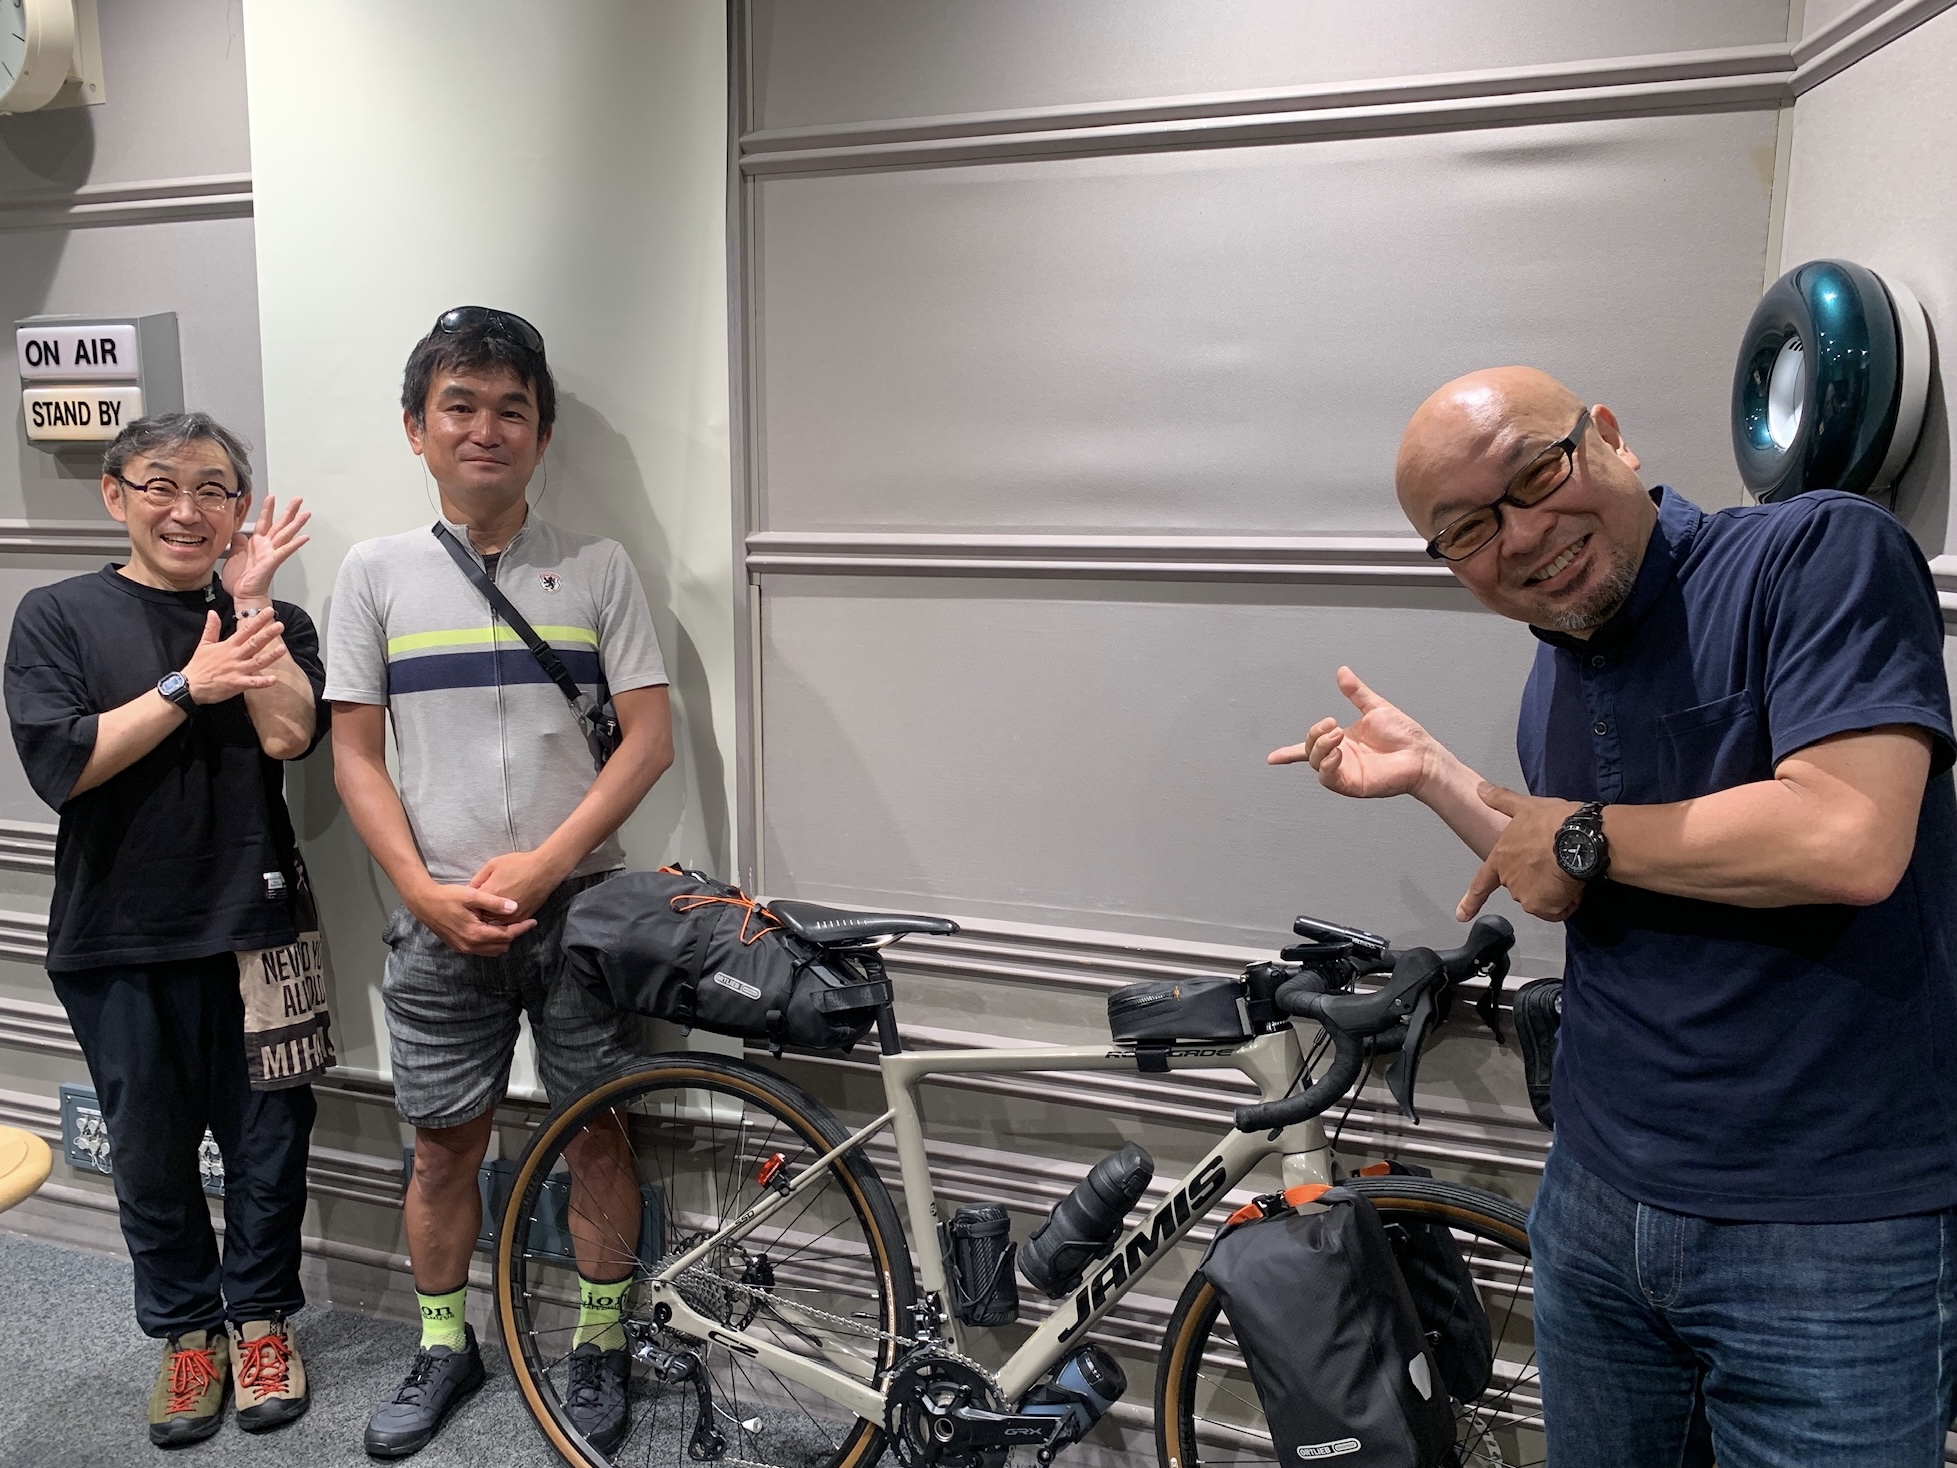 【2022/07/03】『自転車キャンプ大全』の著者・田村浩さんに訊く、自転車キャンプに大切なポイントとは!?